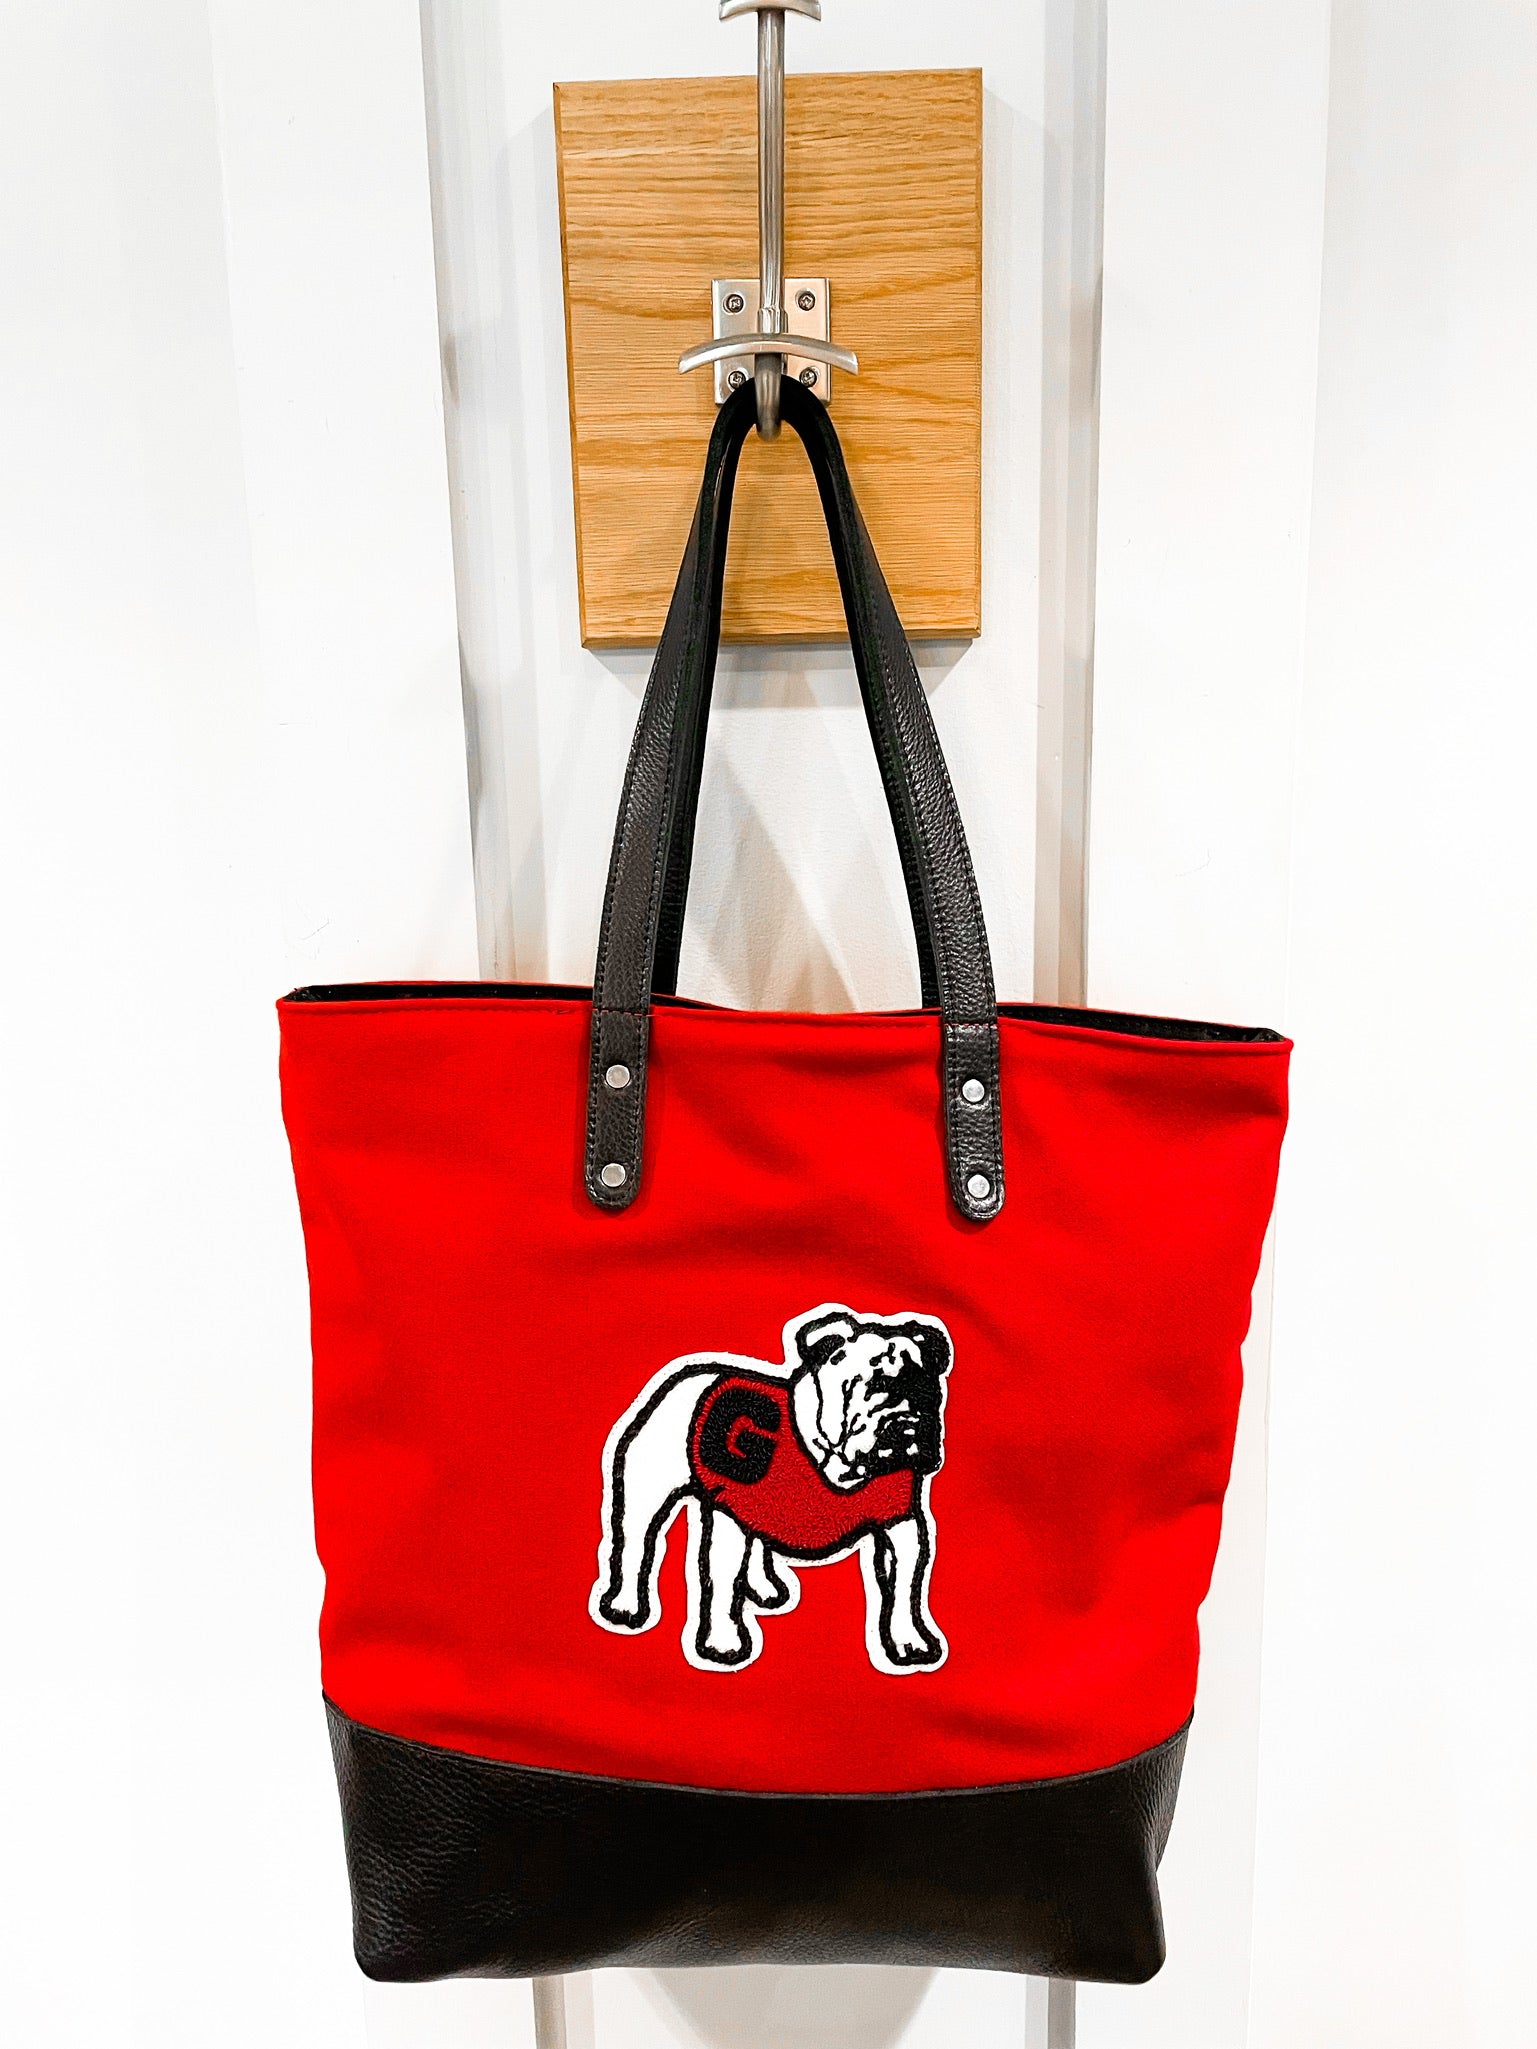 UGA "Bulldog" Tote Bag in Red